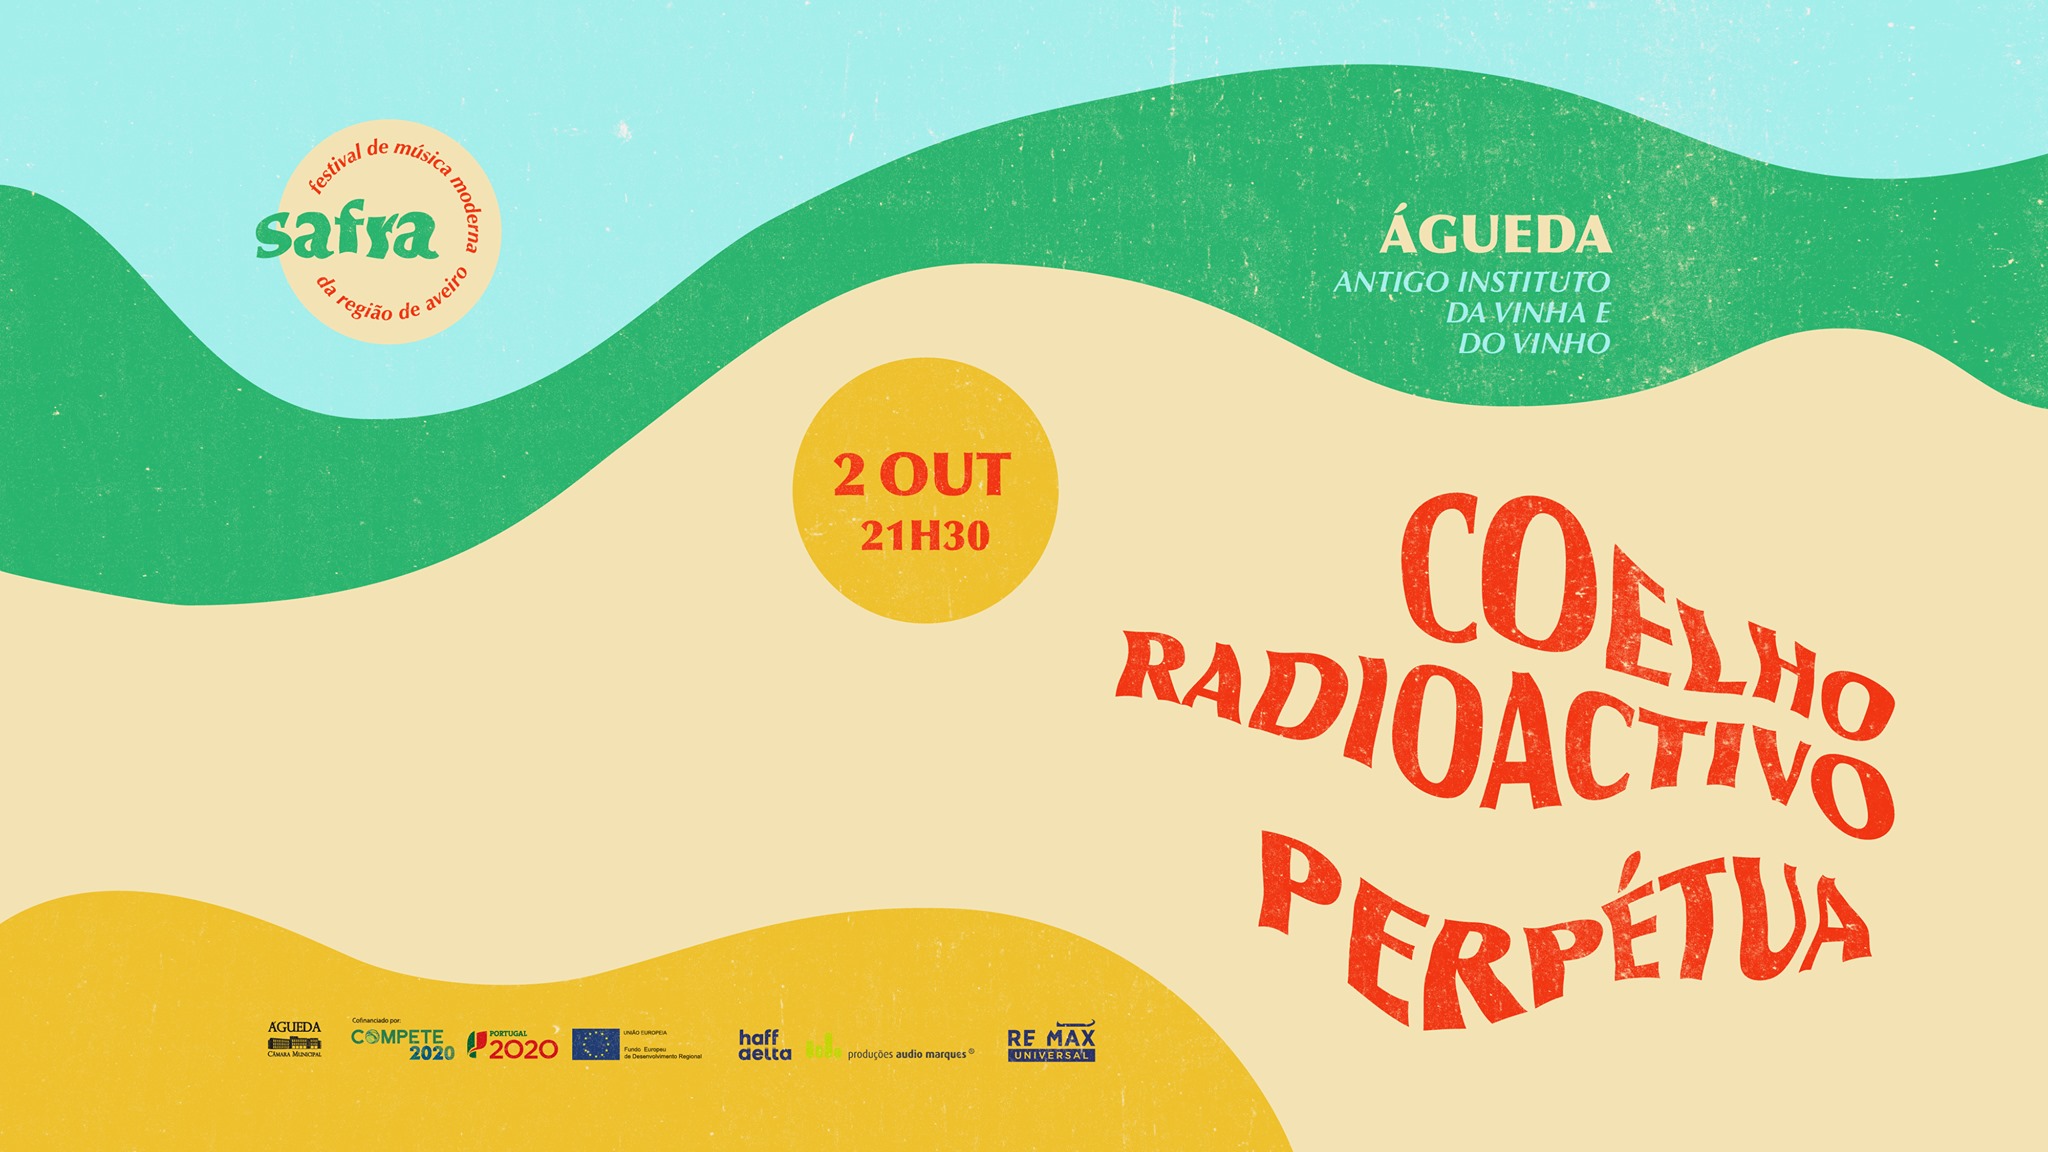 Festival SAFRA em Águeda - Coelho Radioactivo + Perpétua